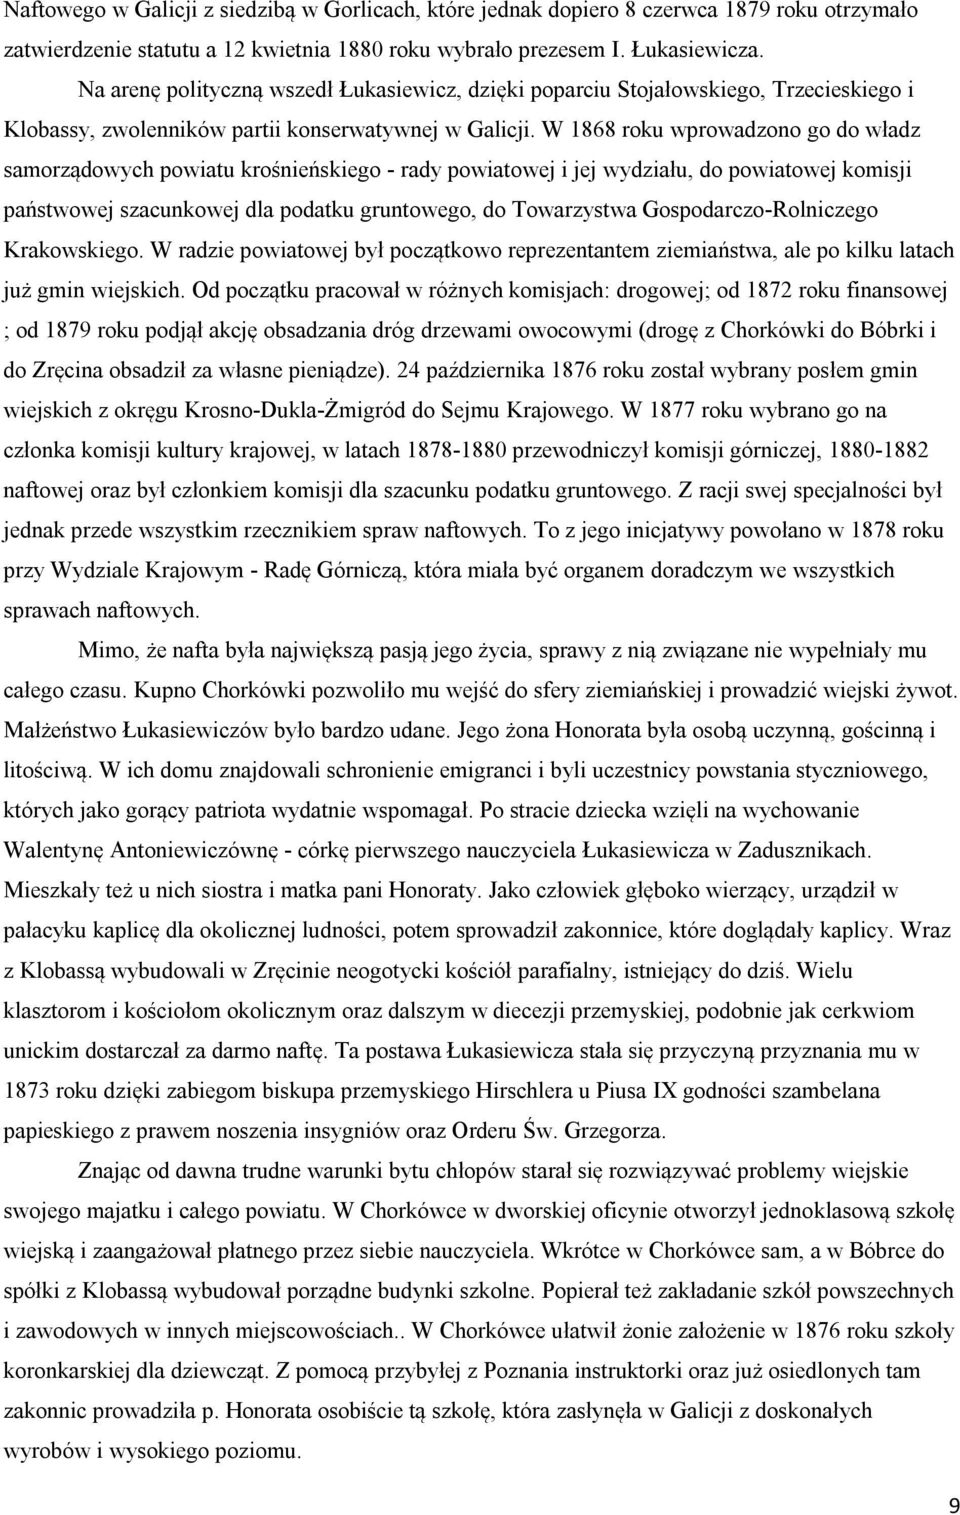 W 1868 roku wprowadzono go do władz samorządowych powiatu krośnieńskiego - rady powiatowej i jej wydziału, do powiatowej komisji państwowej szacunkowej dla podatku gruntowego, do Towarzystwa